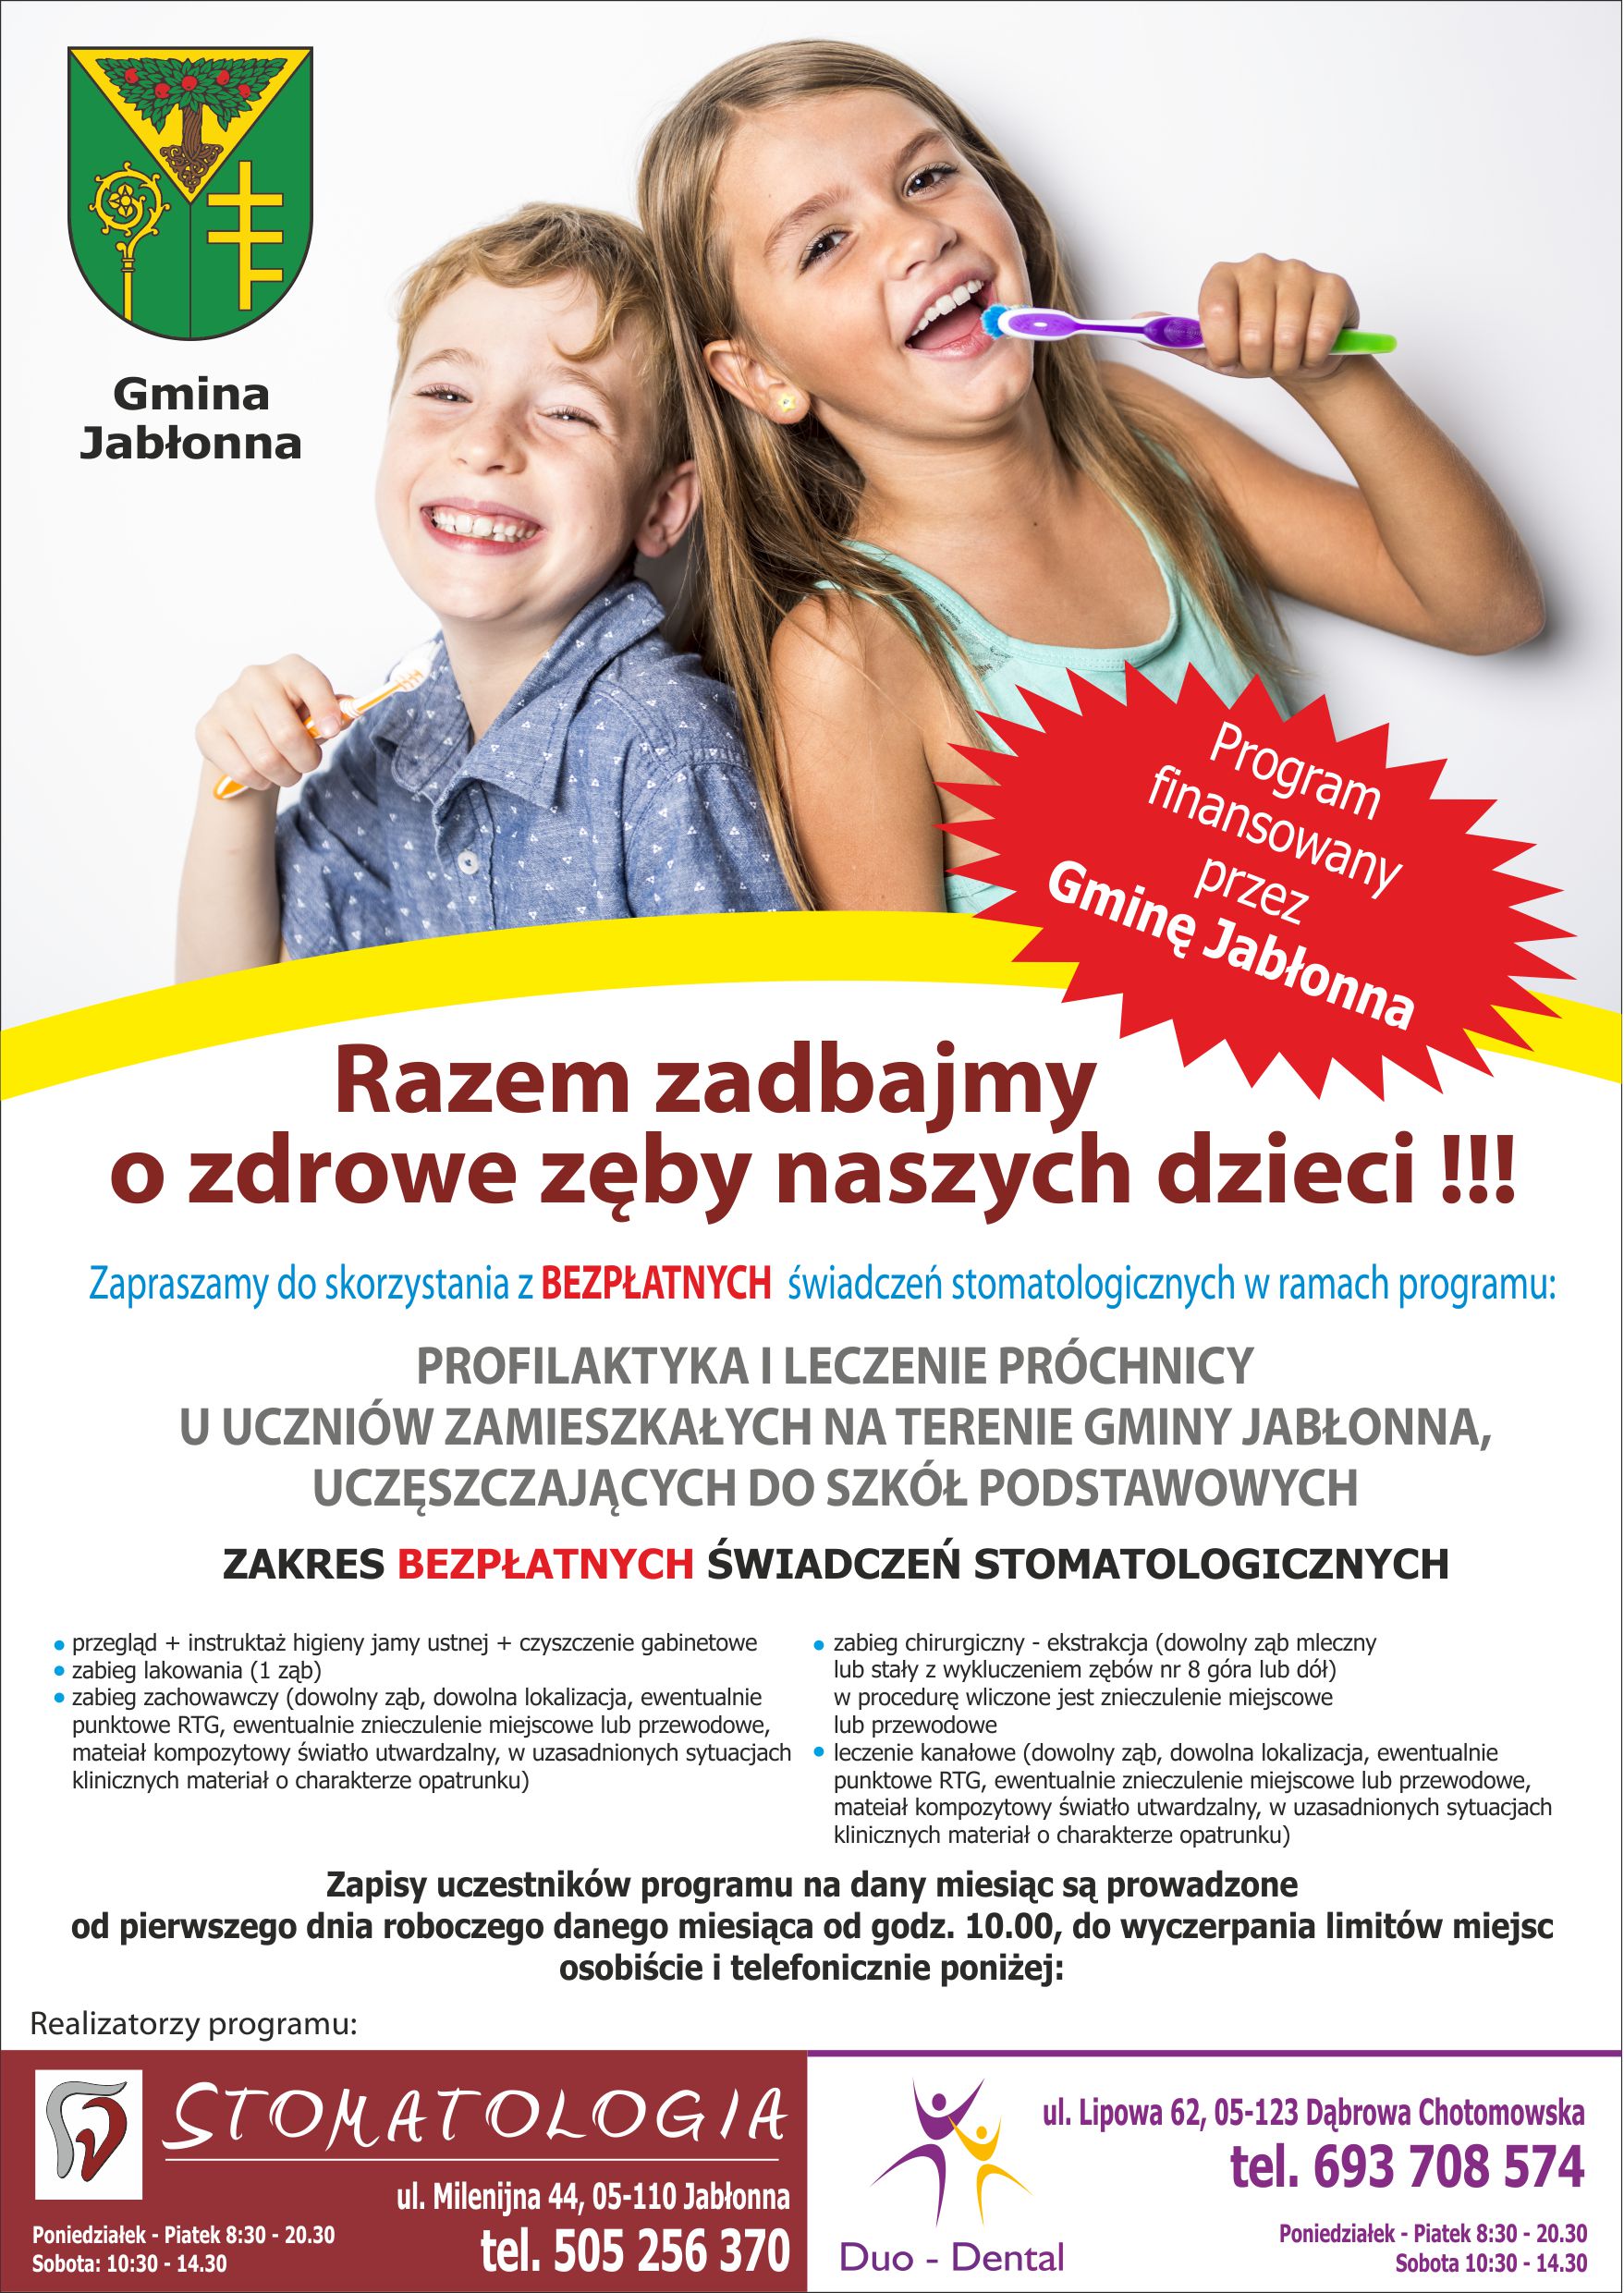 plakat informujący o programie profilaktyki i leczenia próchnicy u uczniów zamieszkałych na terenie Gminy Jabłonna, uczęszczających do szkół podstawowych